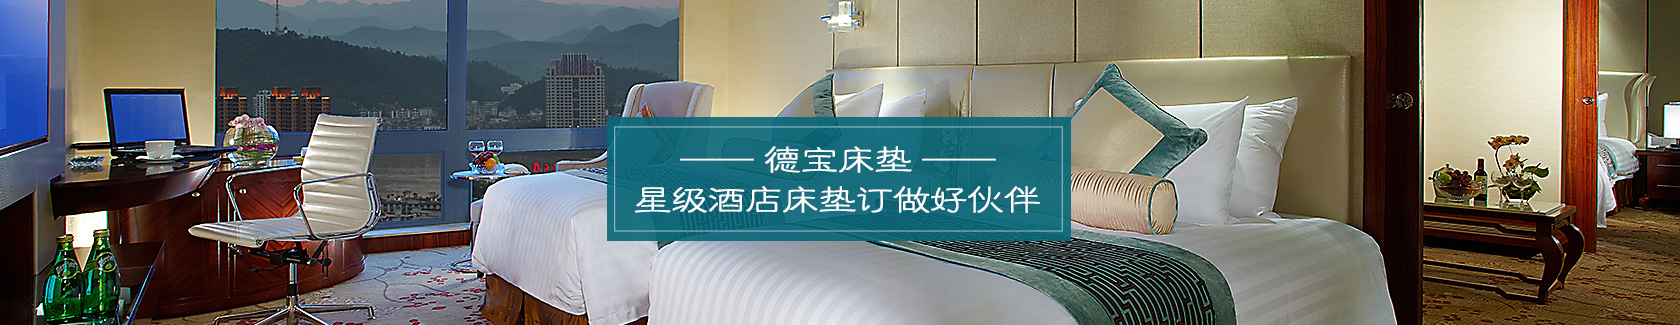 联系德宝--德宝床垫-全球五星级酒店床垫定制厂家